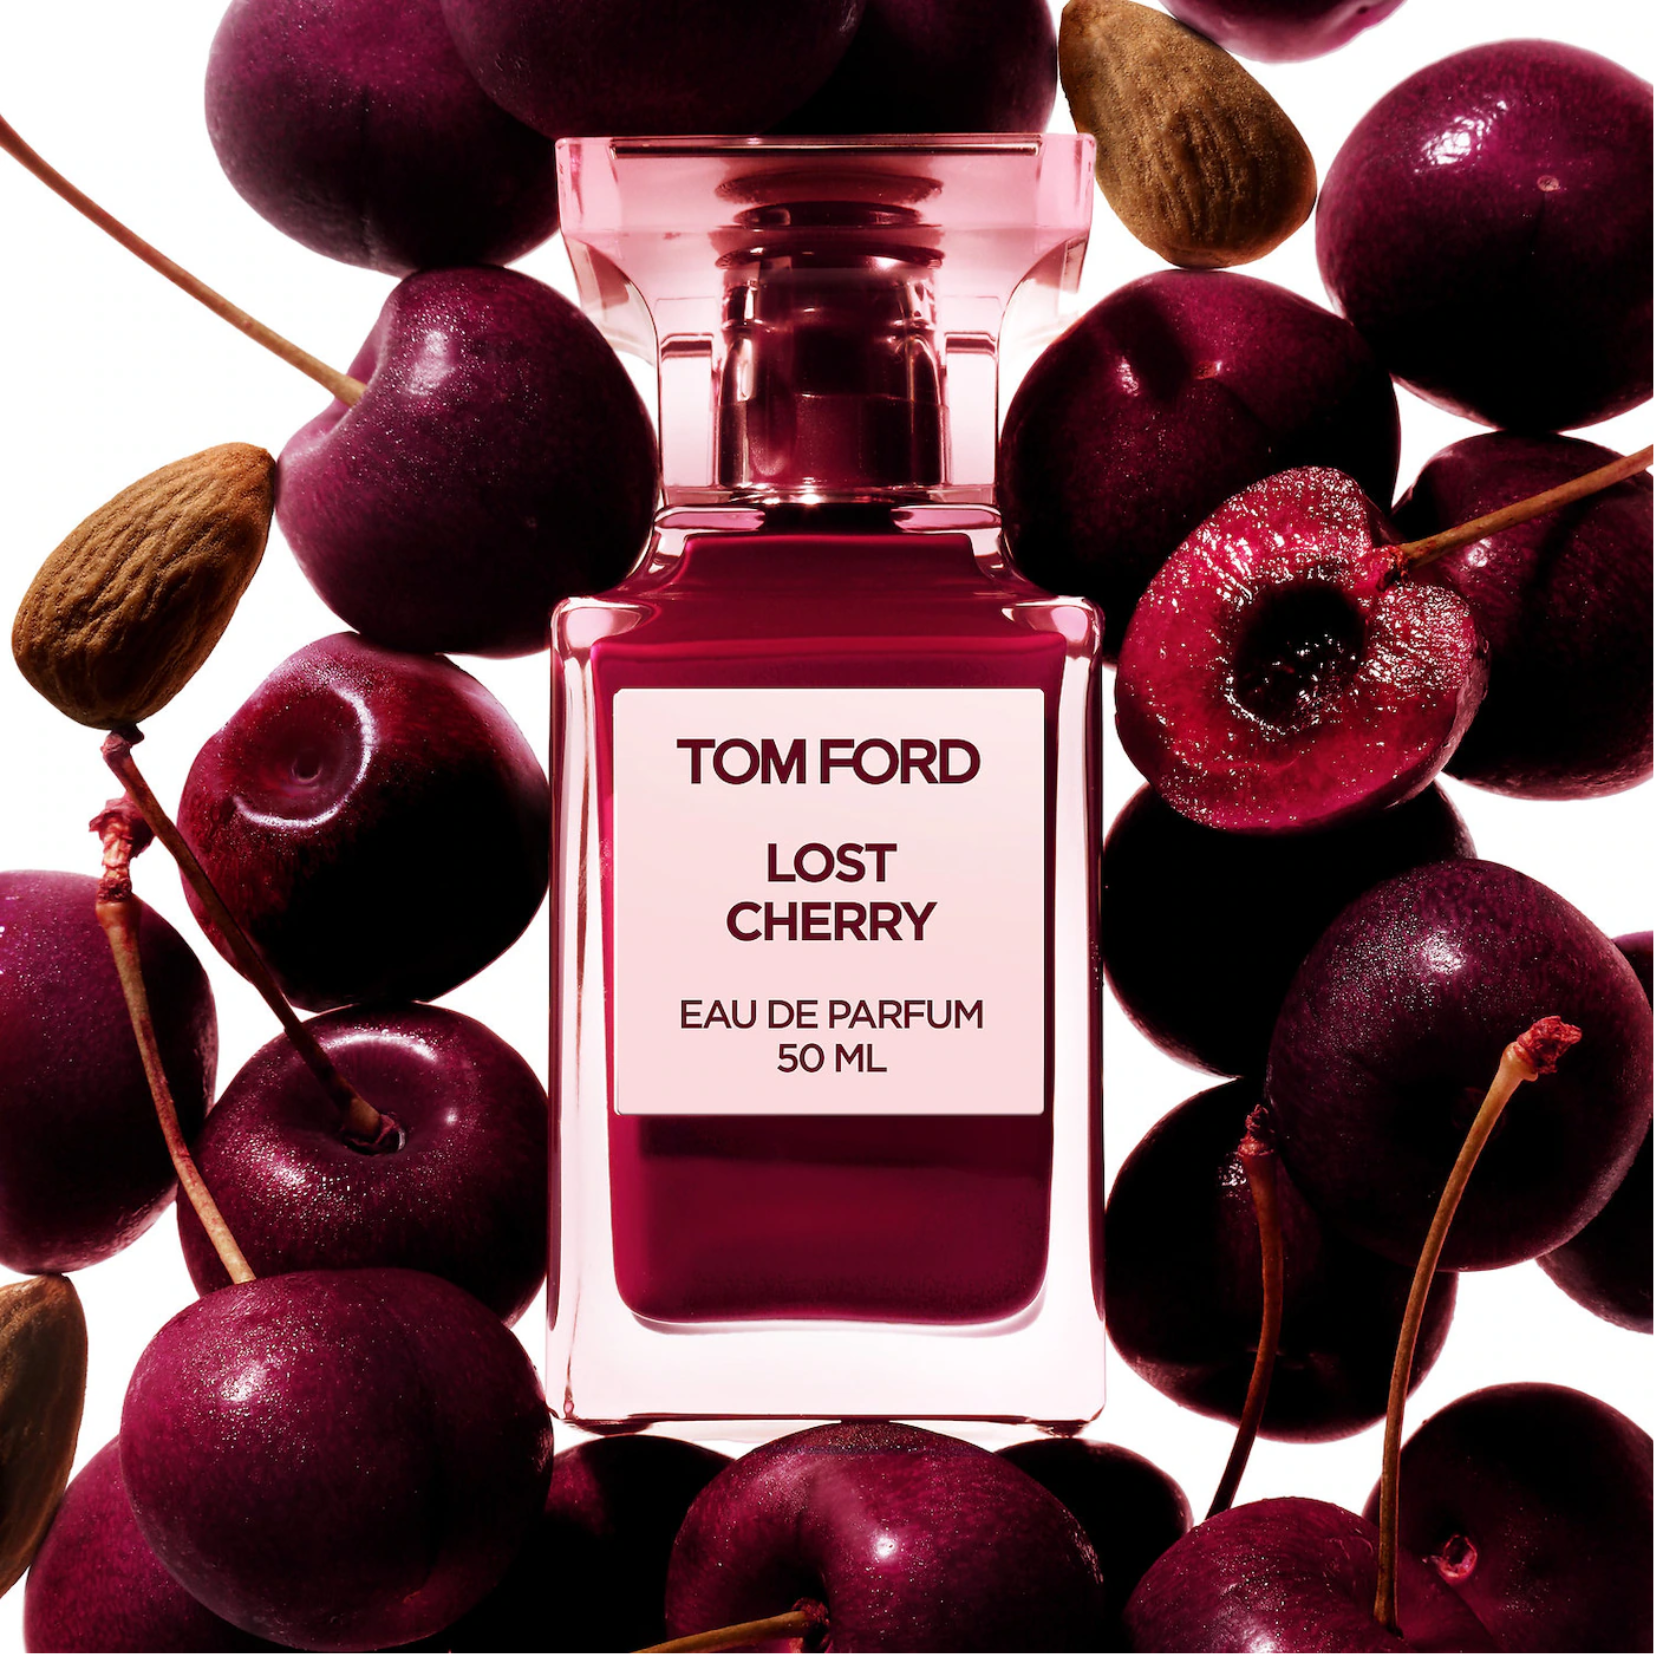 Tom Ford Lost Cherry Eau de Parfum for Women